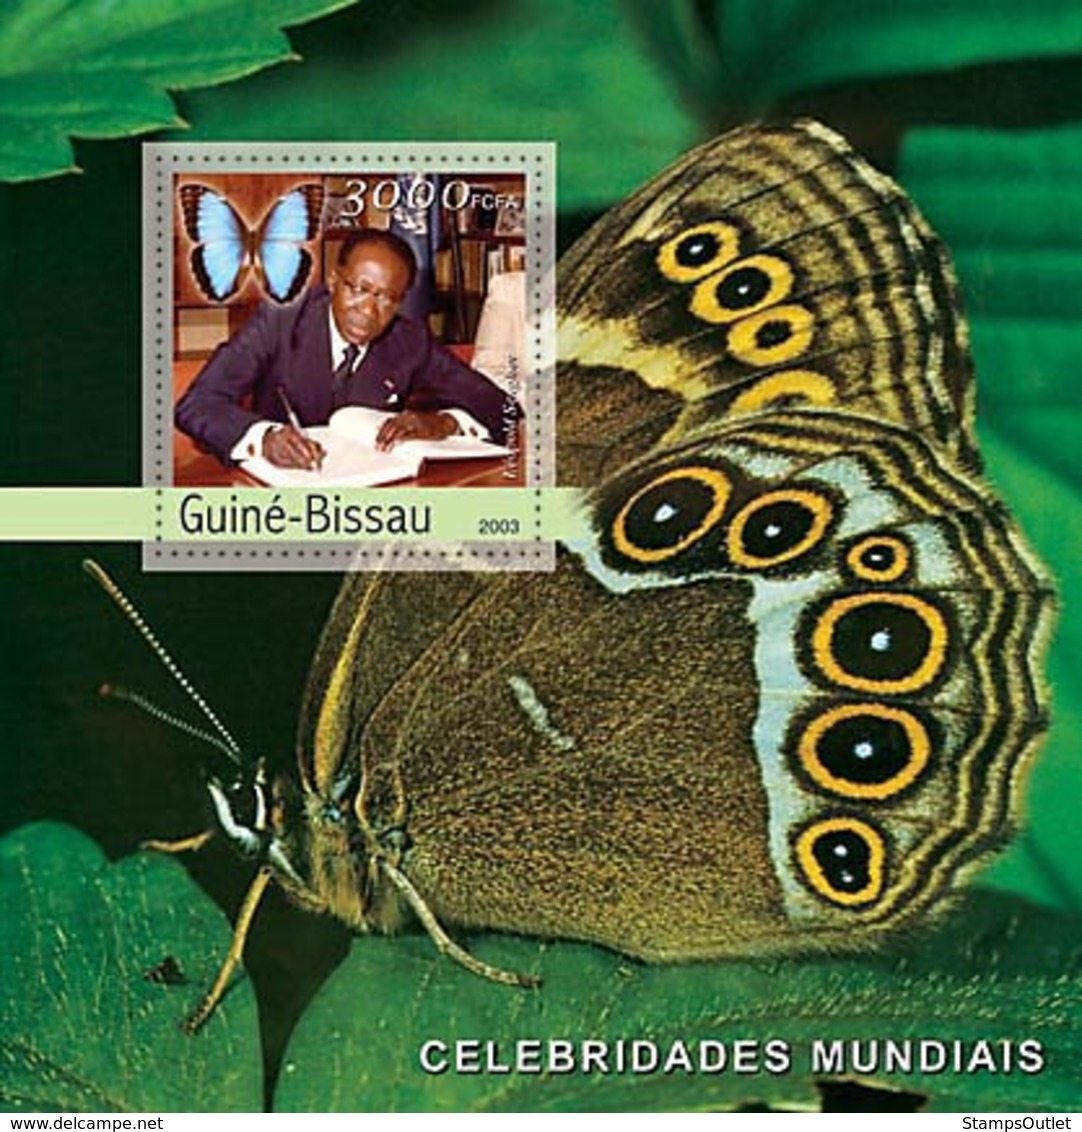 Guinea - Bissau 2003 - L.Senghor (butterflies) S/s. - Guinée-Bissau